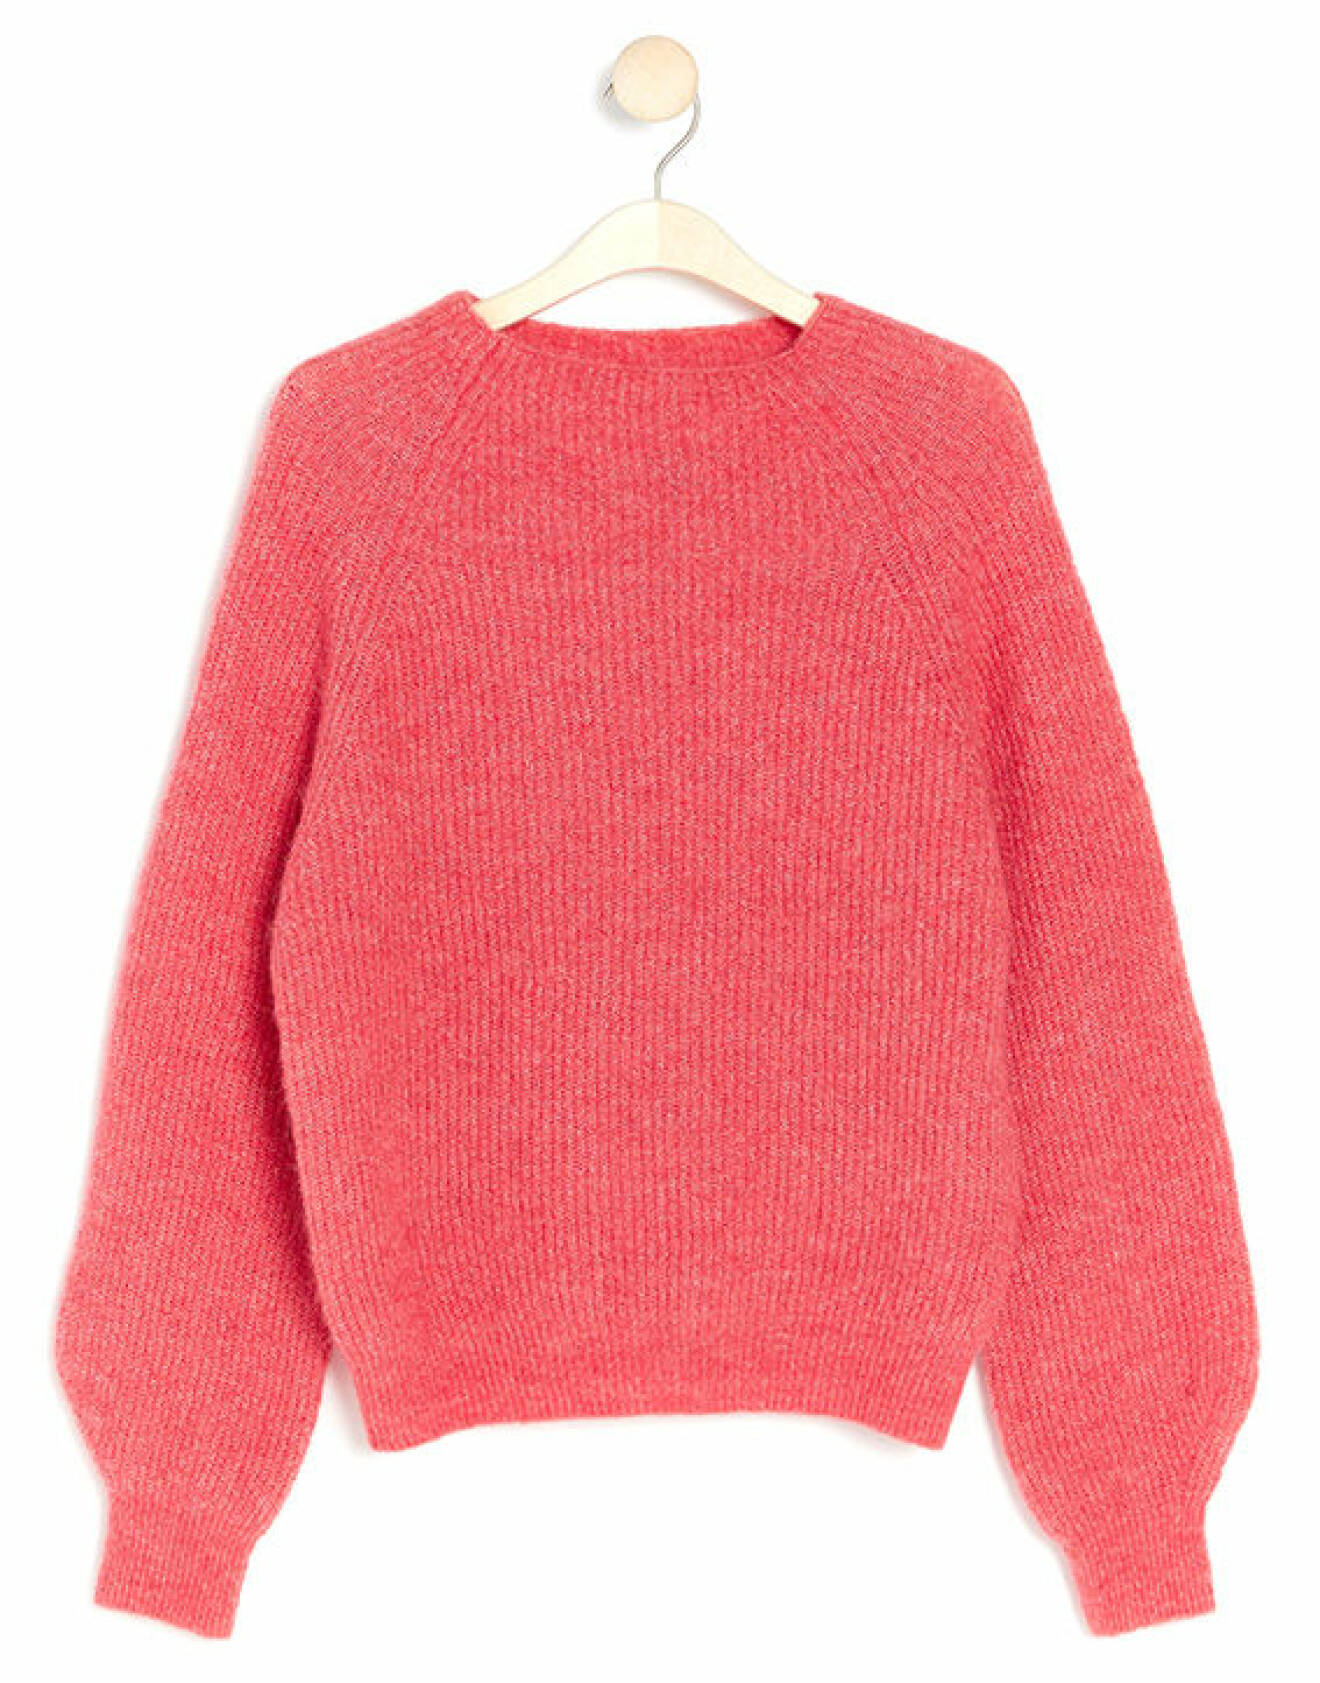 Rosa stickad tröja i alpackablandning från Pink Collection från Lindex.